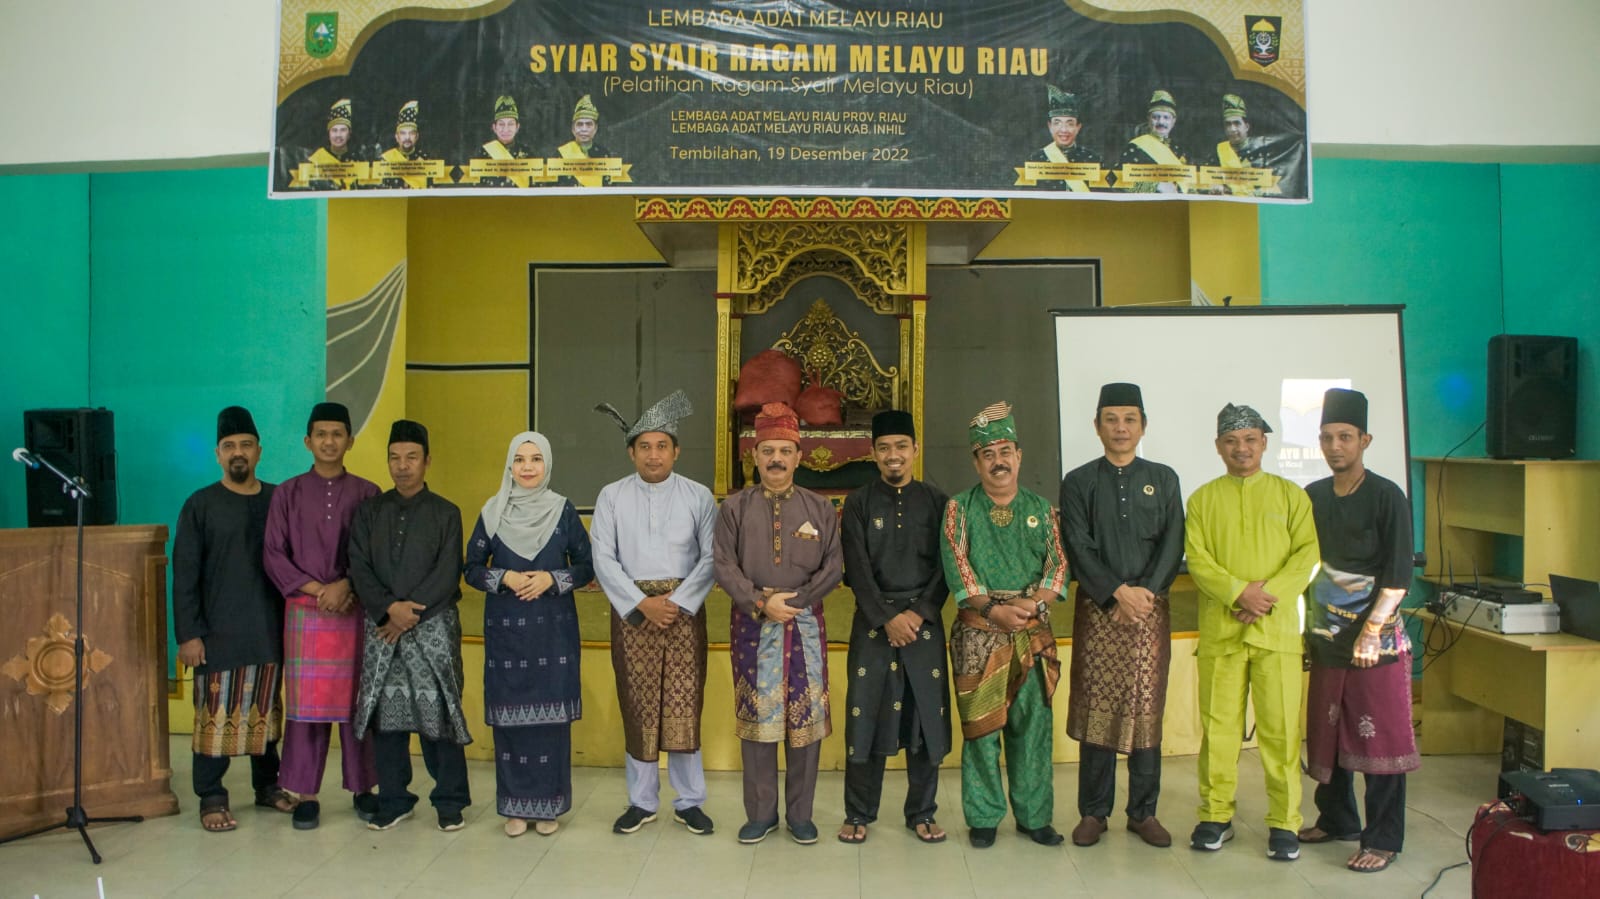 LAMR Gelar Kegiatan dengan Tajuk Syiar Syair Ragam Melayu Riau